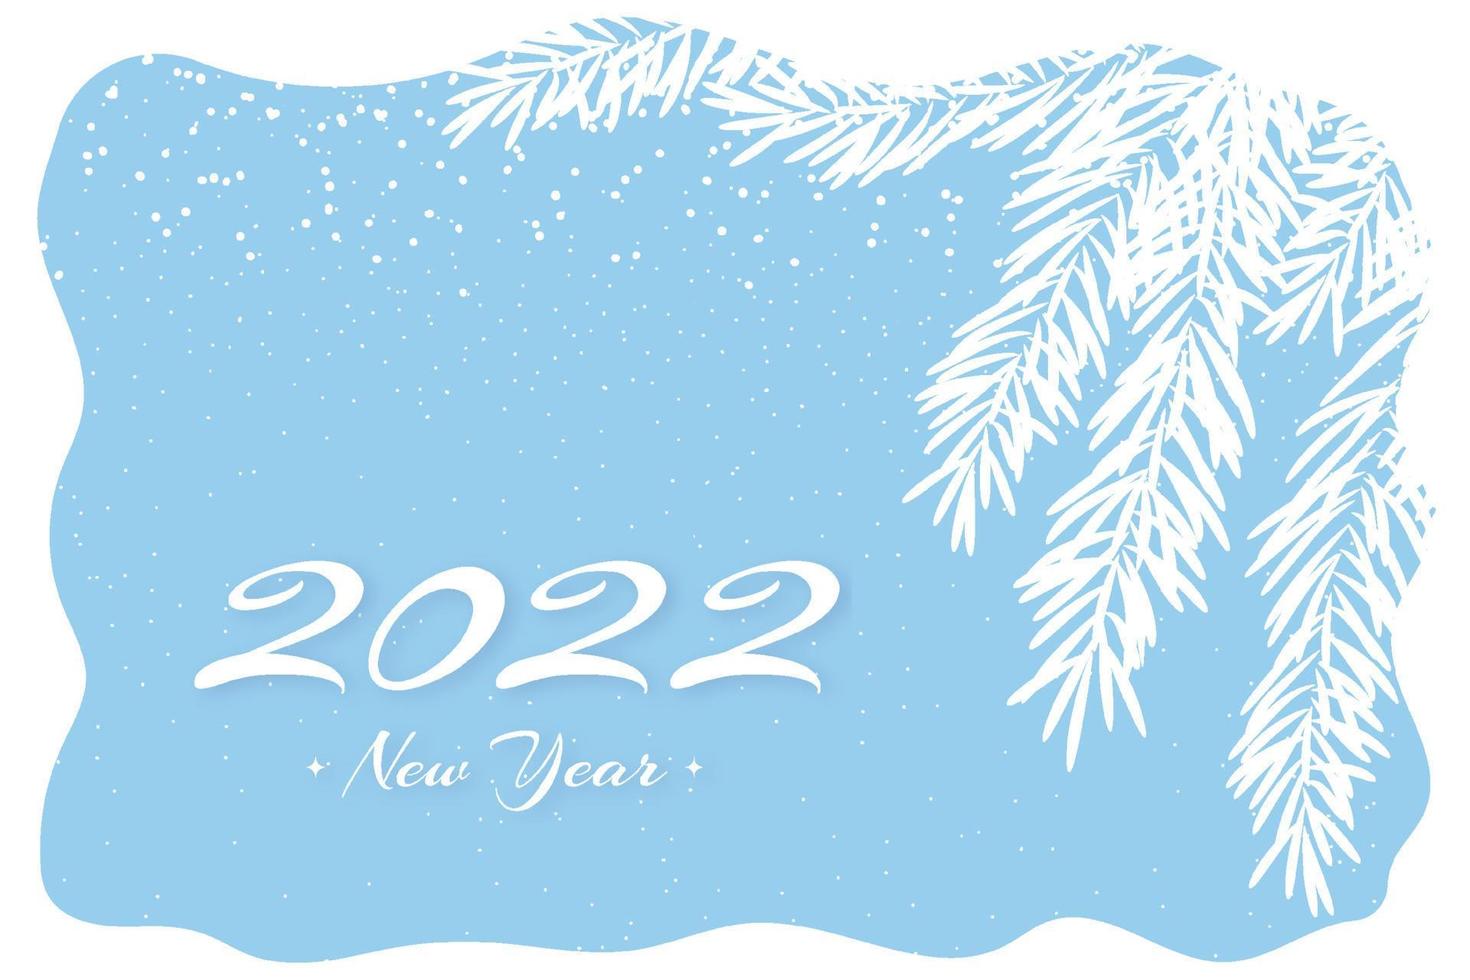 Tarjeta de nieve 2022 en estilo plano sobre fondo claro. Ilustración de año nuevo. Fondo de vector de color azul. diseño de banner de paisaje abstracto. concepto de celebración navideña